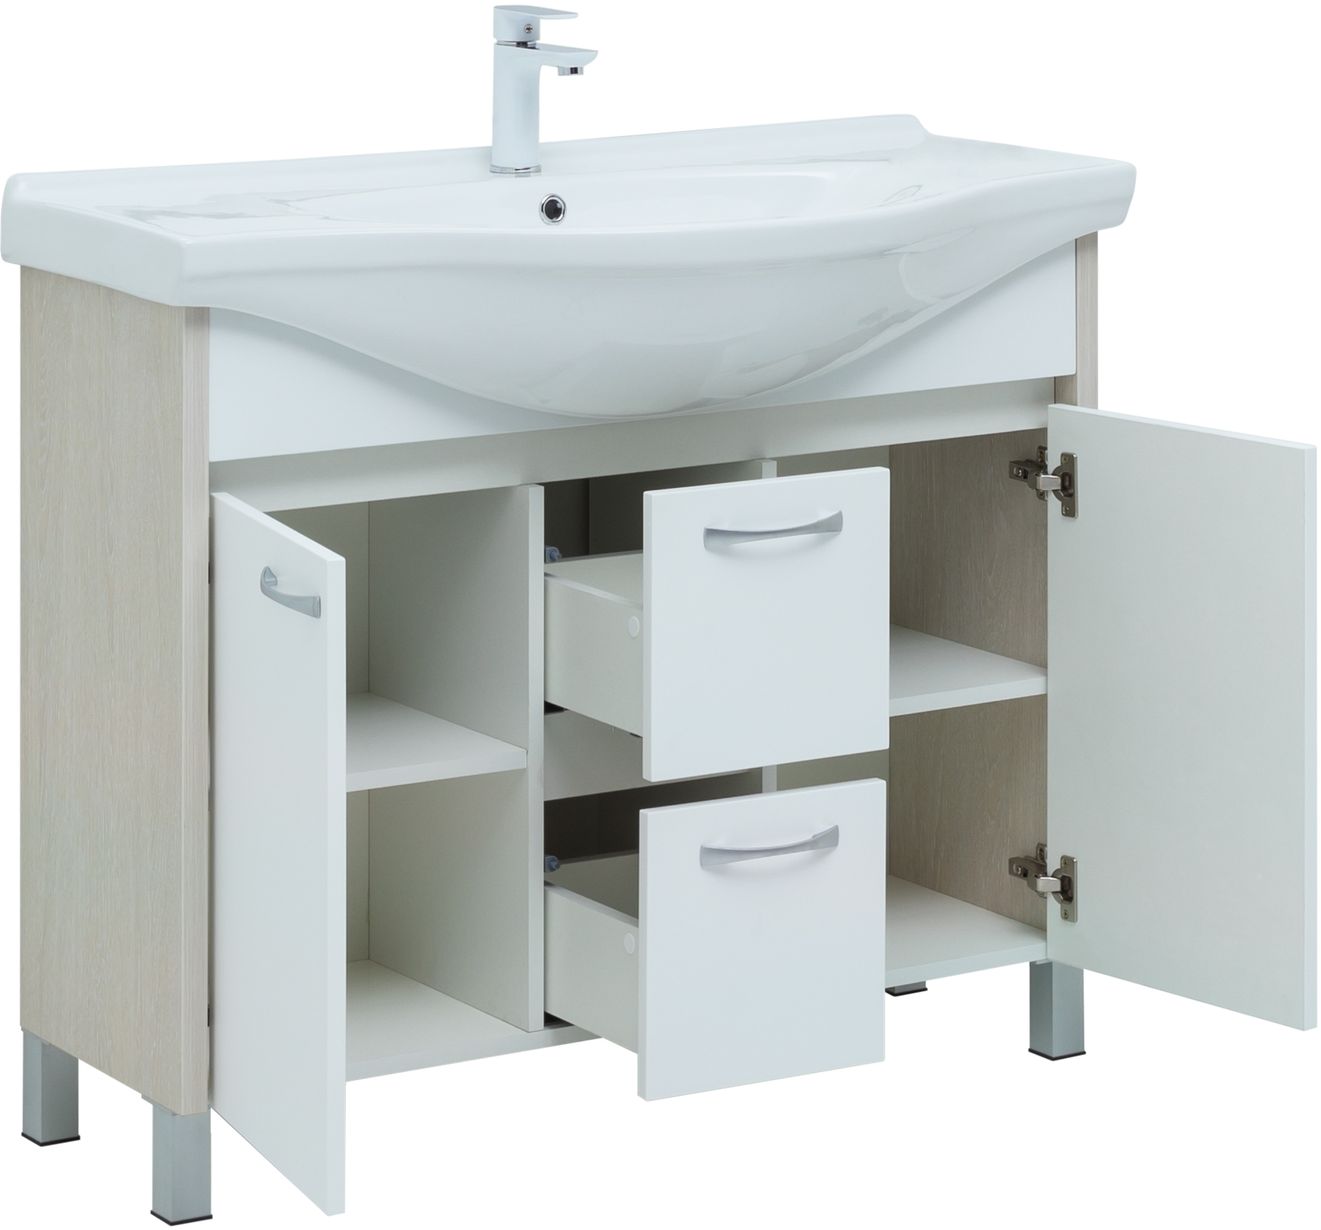 Мебель для ванной Aquanet Донна 102 см напольная 2 ящика и 2 дверцы, дуб, белый, цвет хром 274164 - фото 2